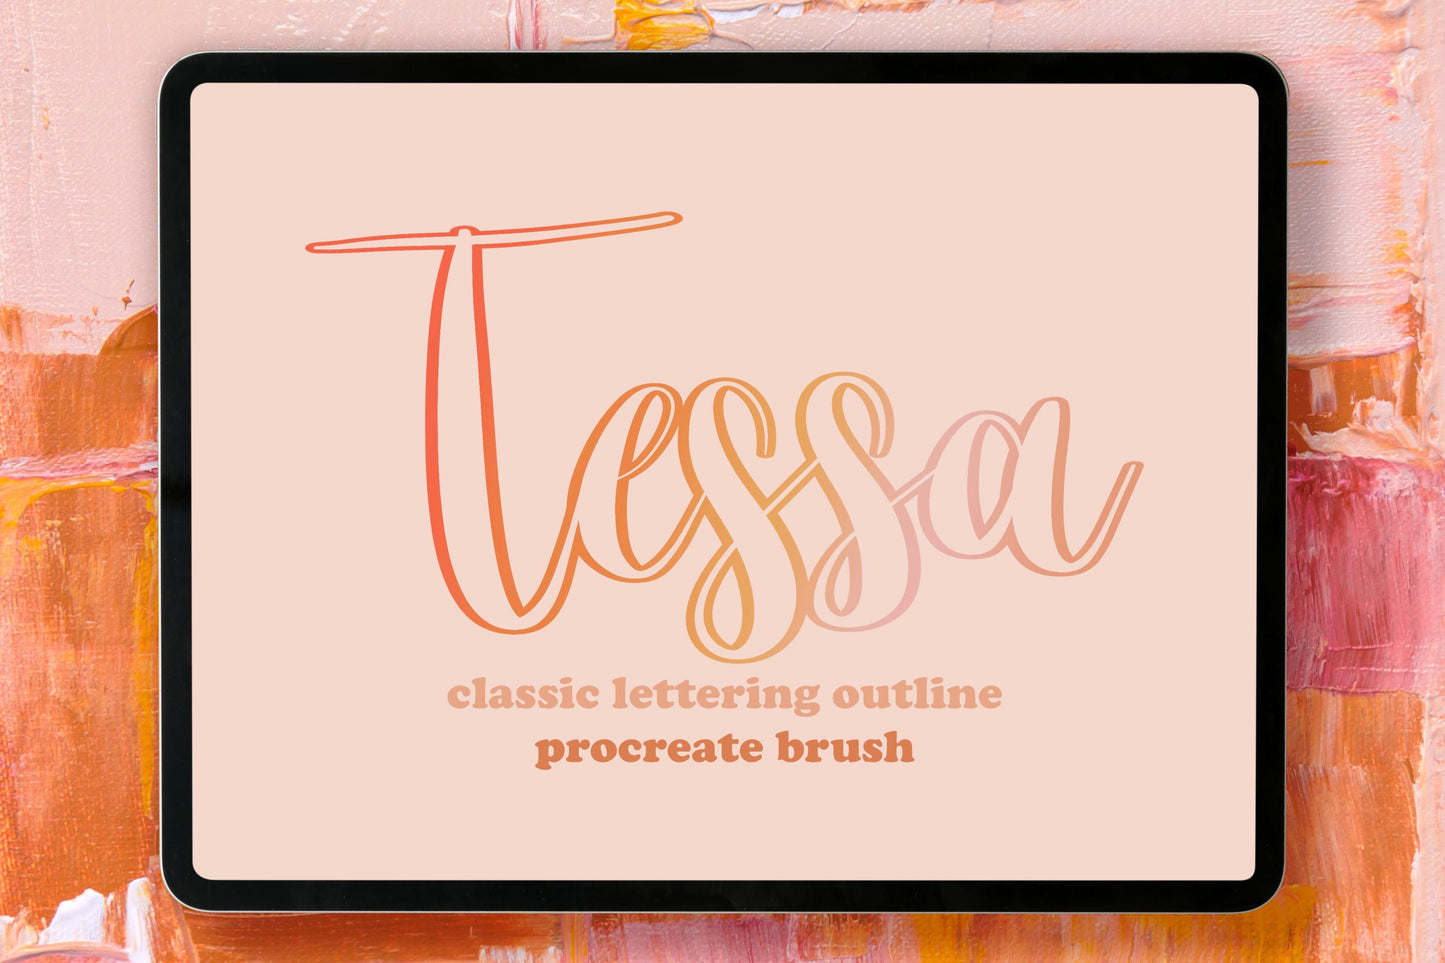 Tessa Outline Procreate Lettering Brush